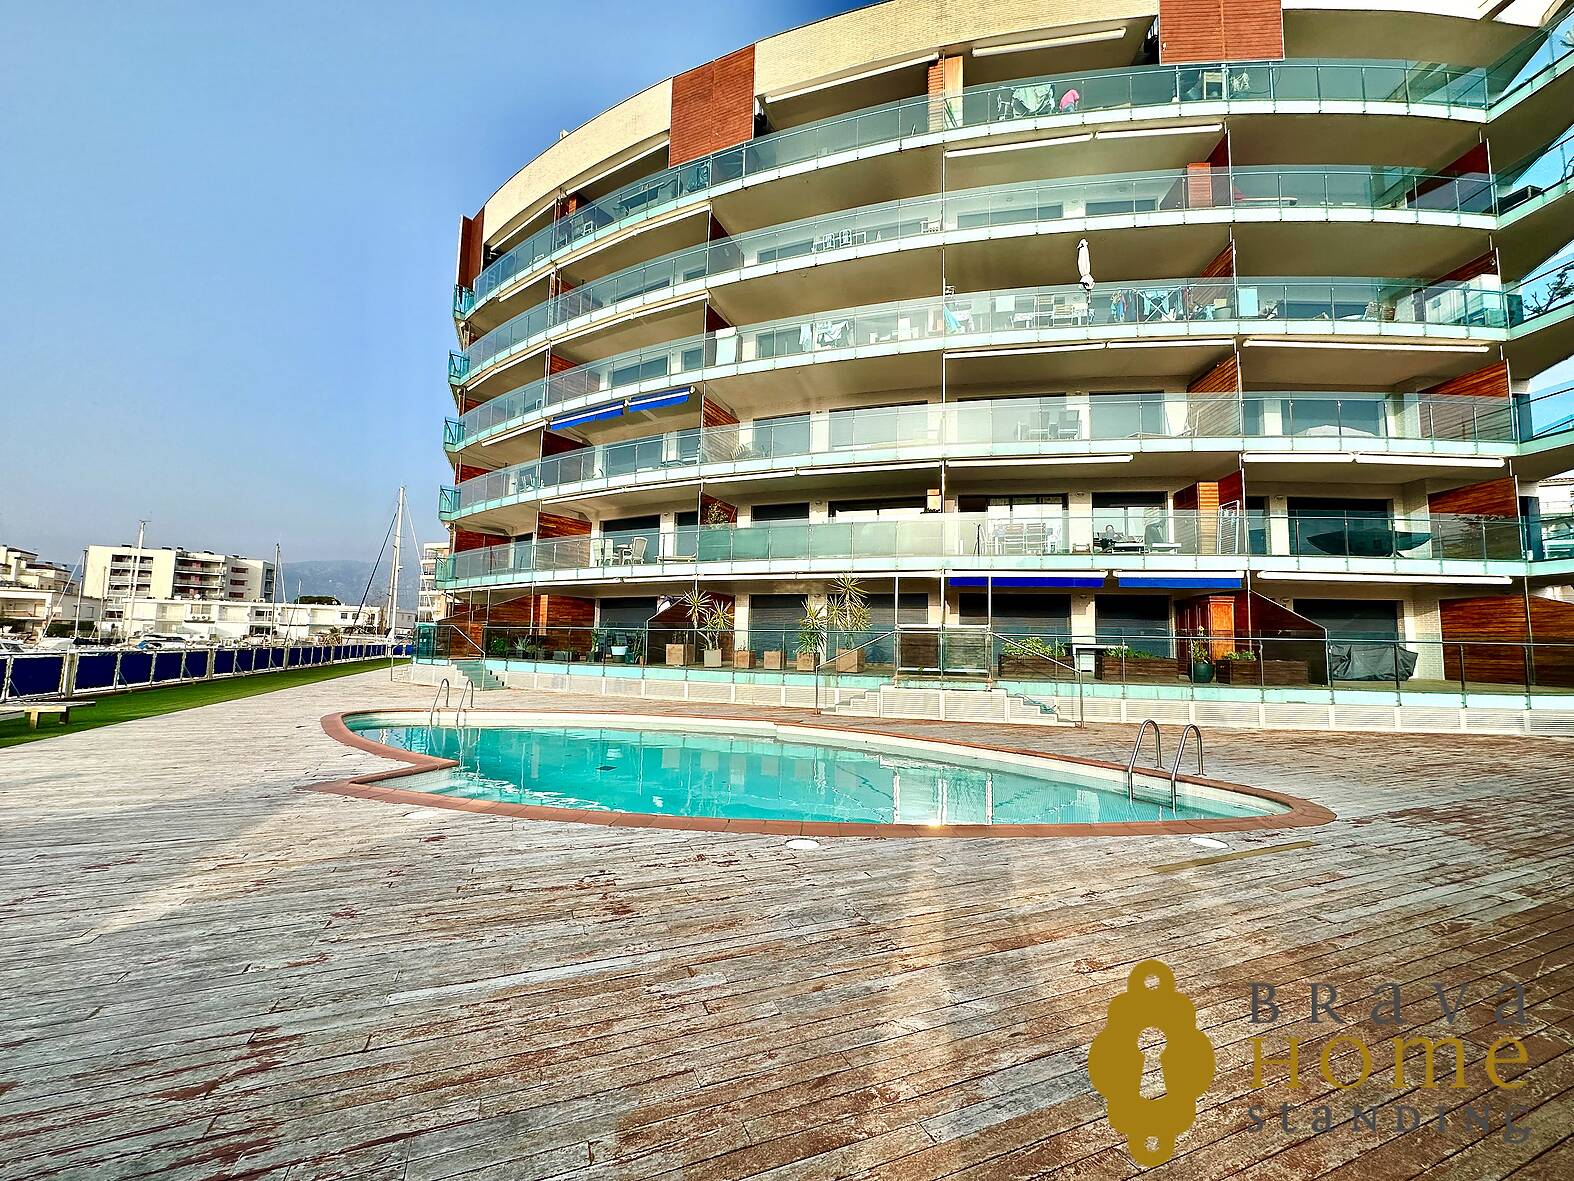 Beautiful modern apartment with pool for sale in Rosas - Santa Margarita